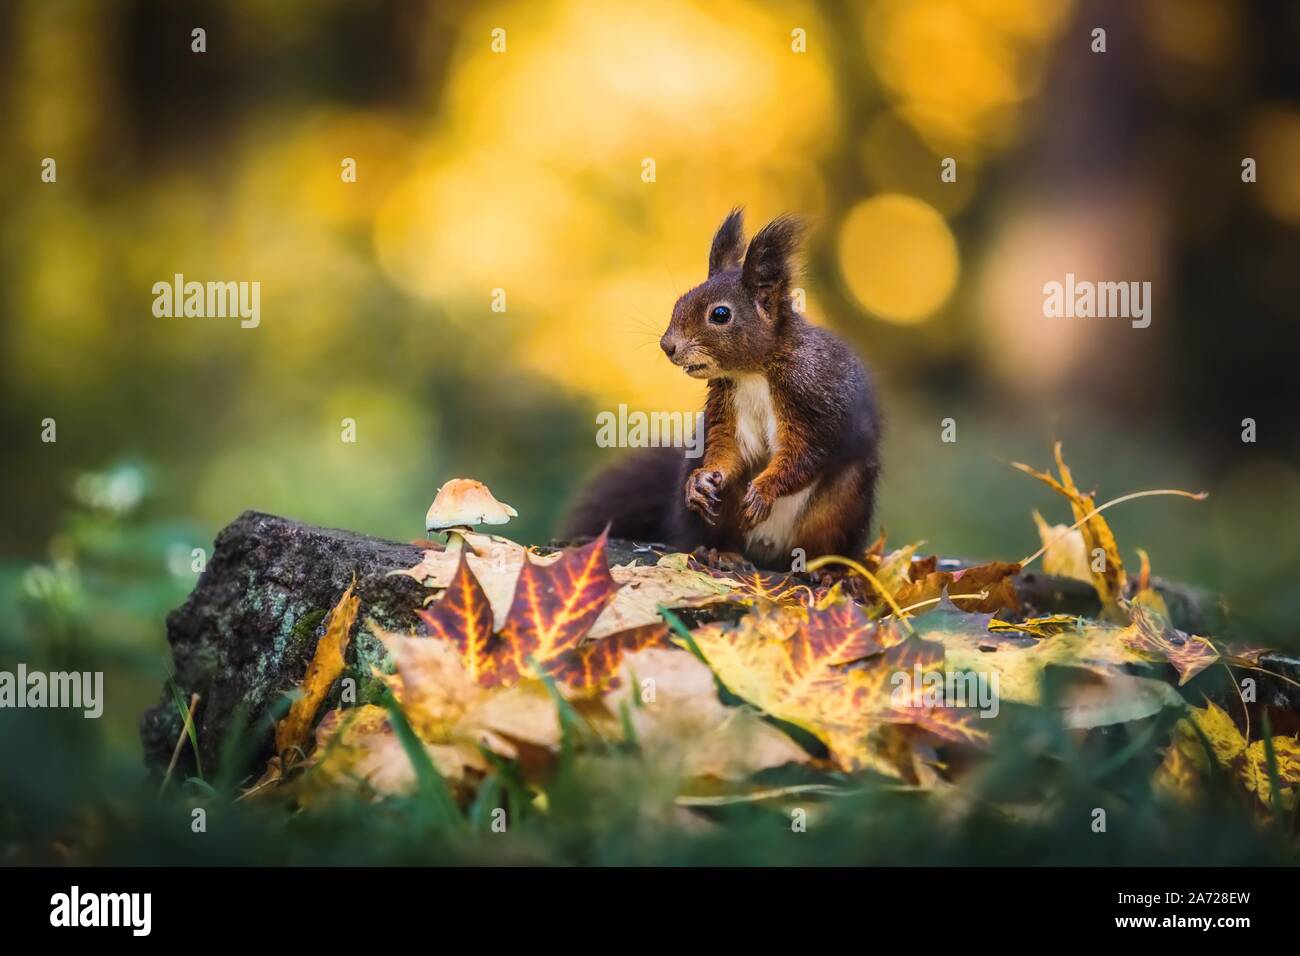 Écureuil rouge mignon assis sur une souche d'arbre couverts de feuilles colorées et de la croissance de champignons. Jour d'automne dans une forêt sombre. Fond jaune floue. Banque D'Images